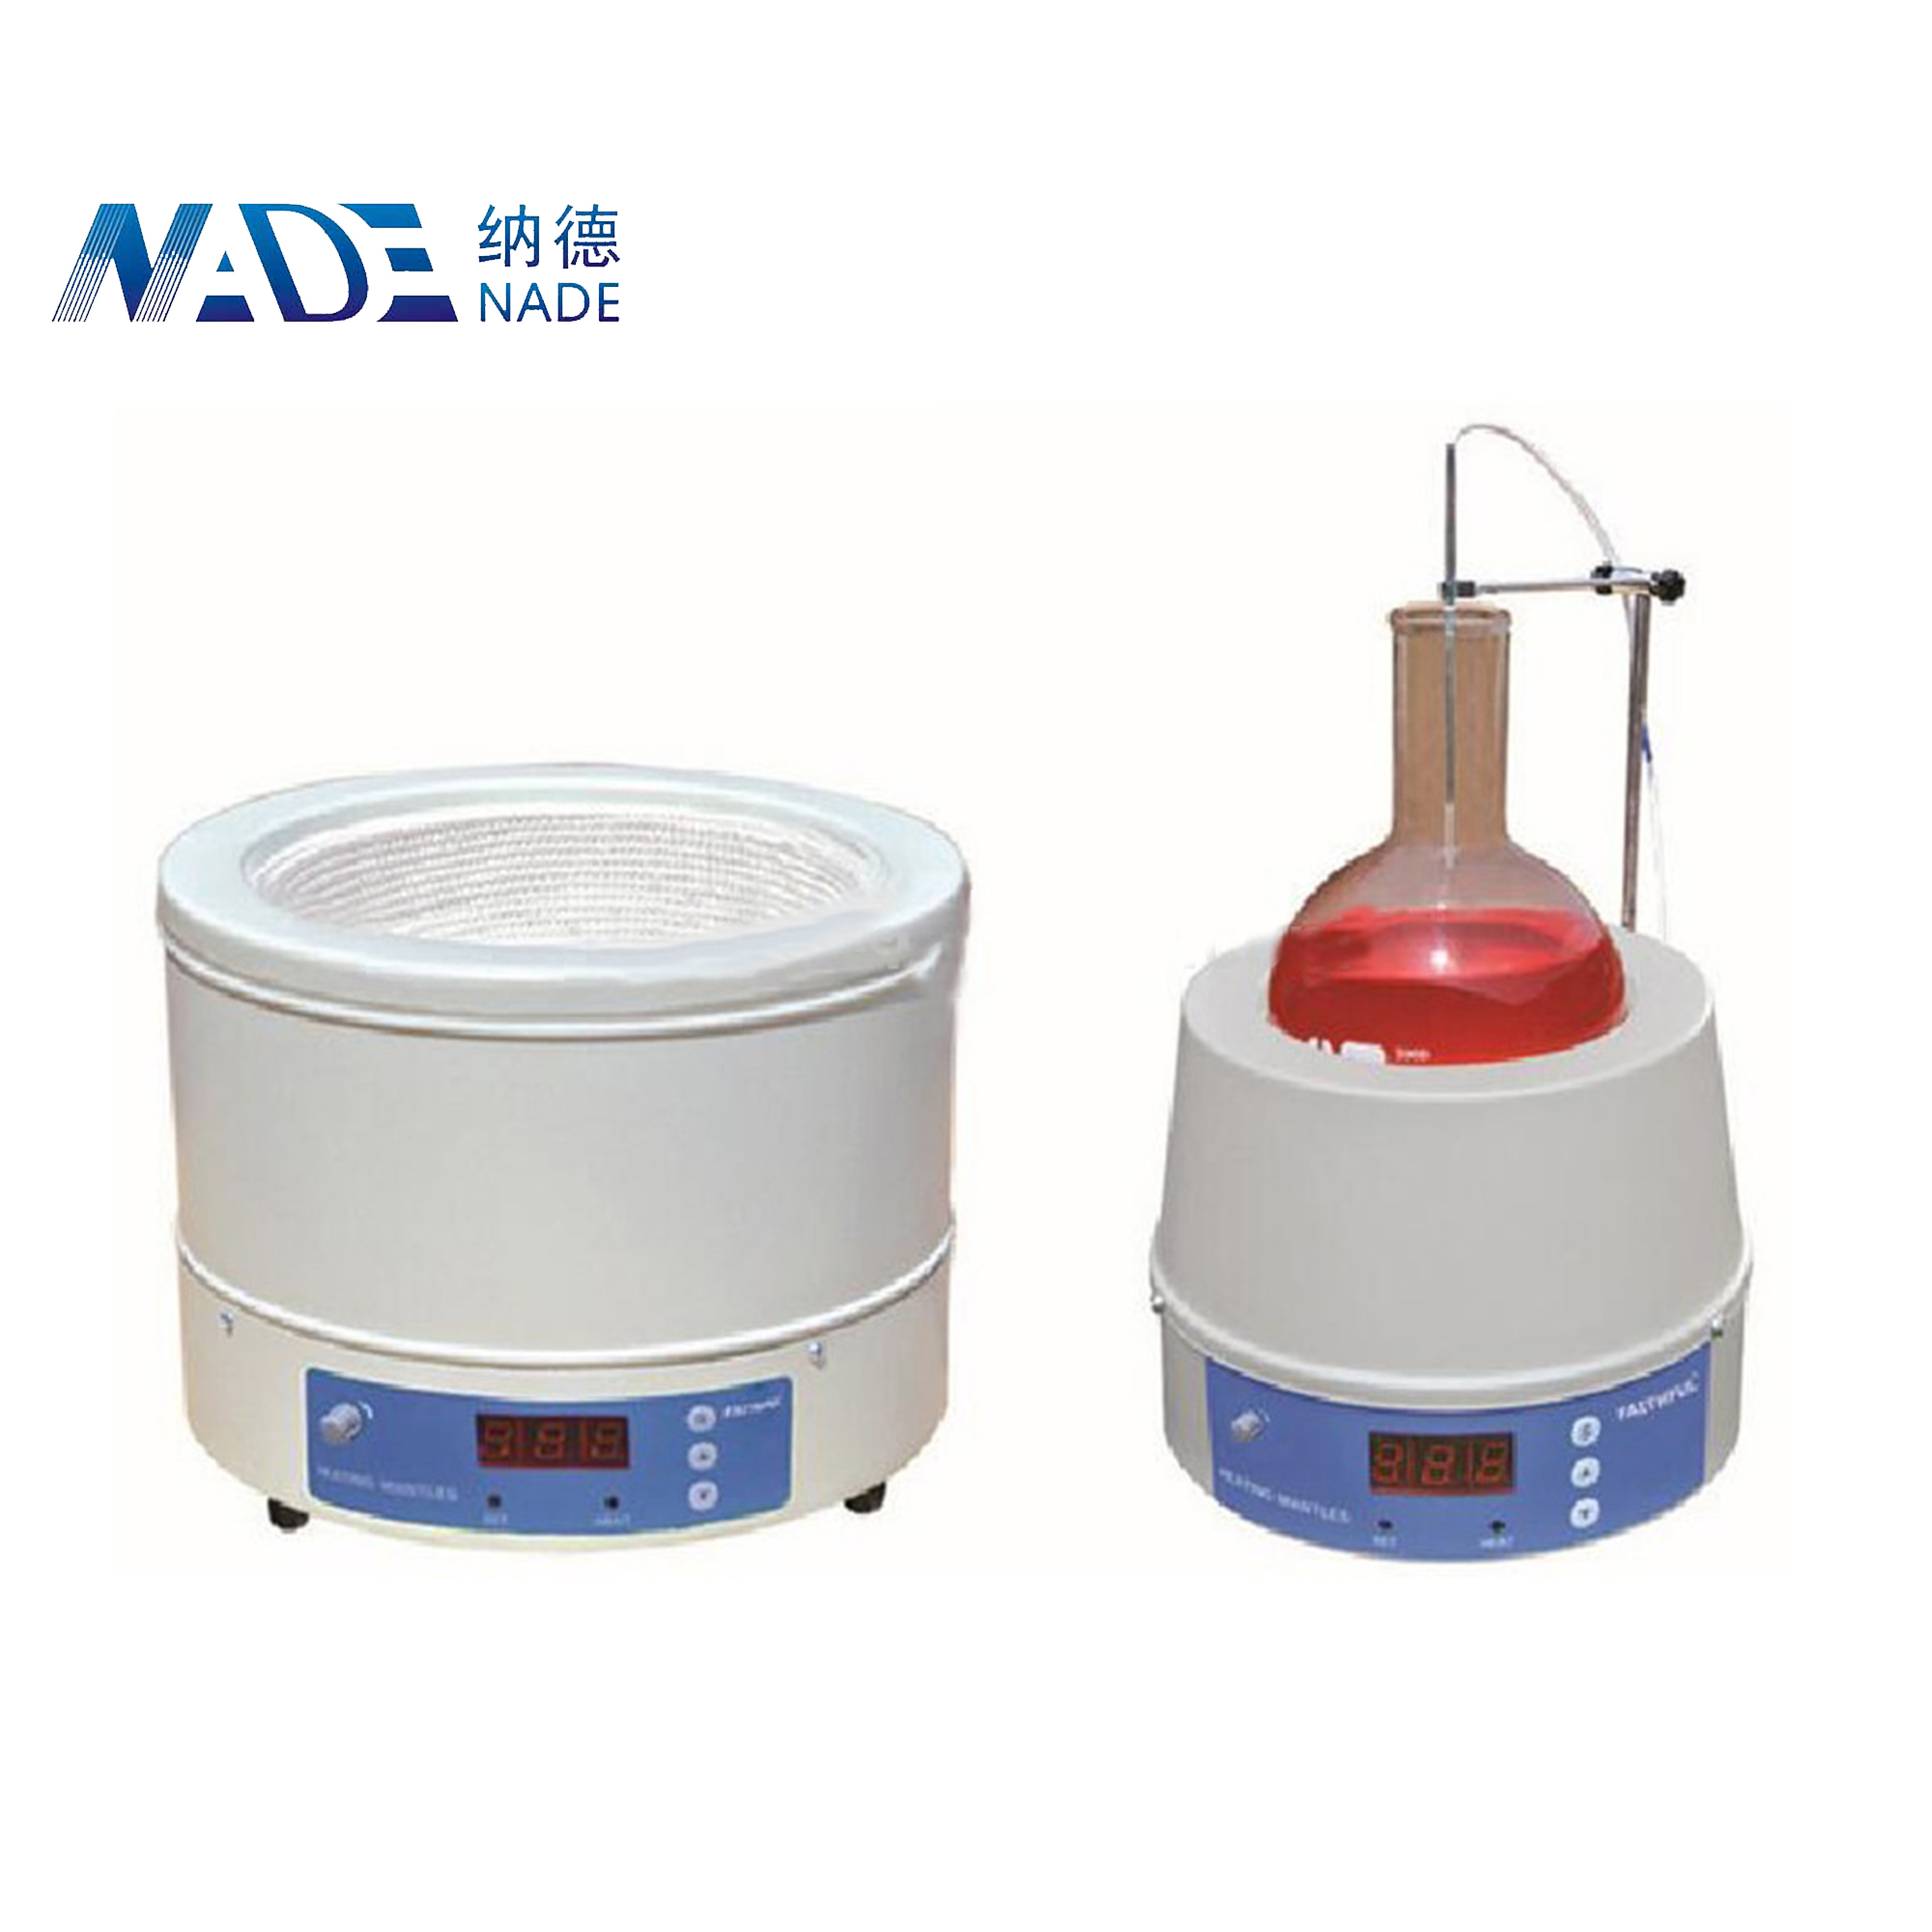 NADE 500ml Laboratory Digital Magnetic Stirring Heating Mantle